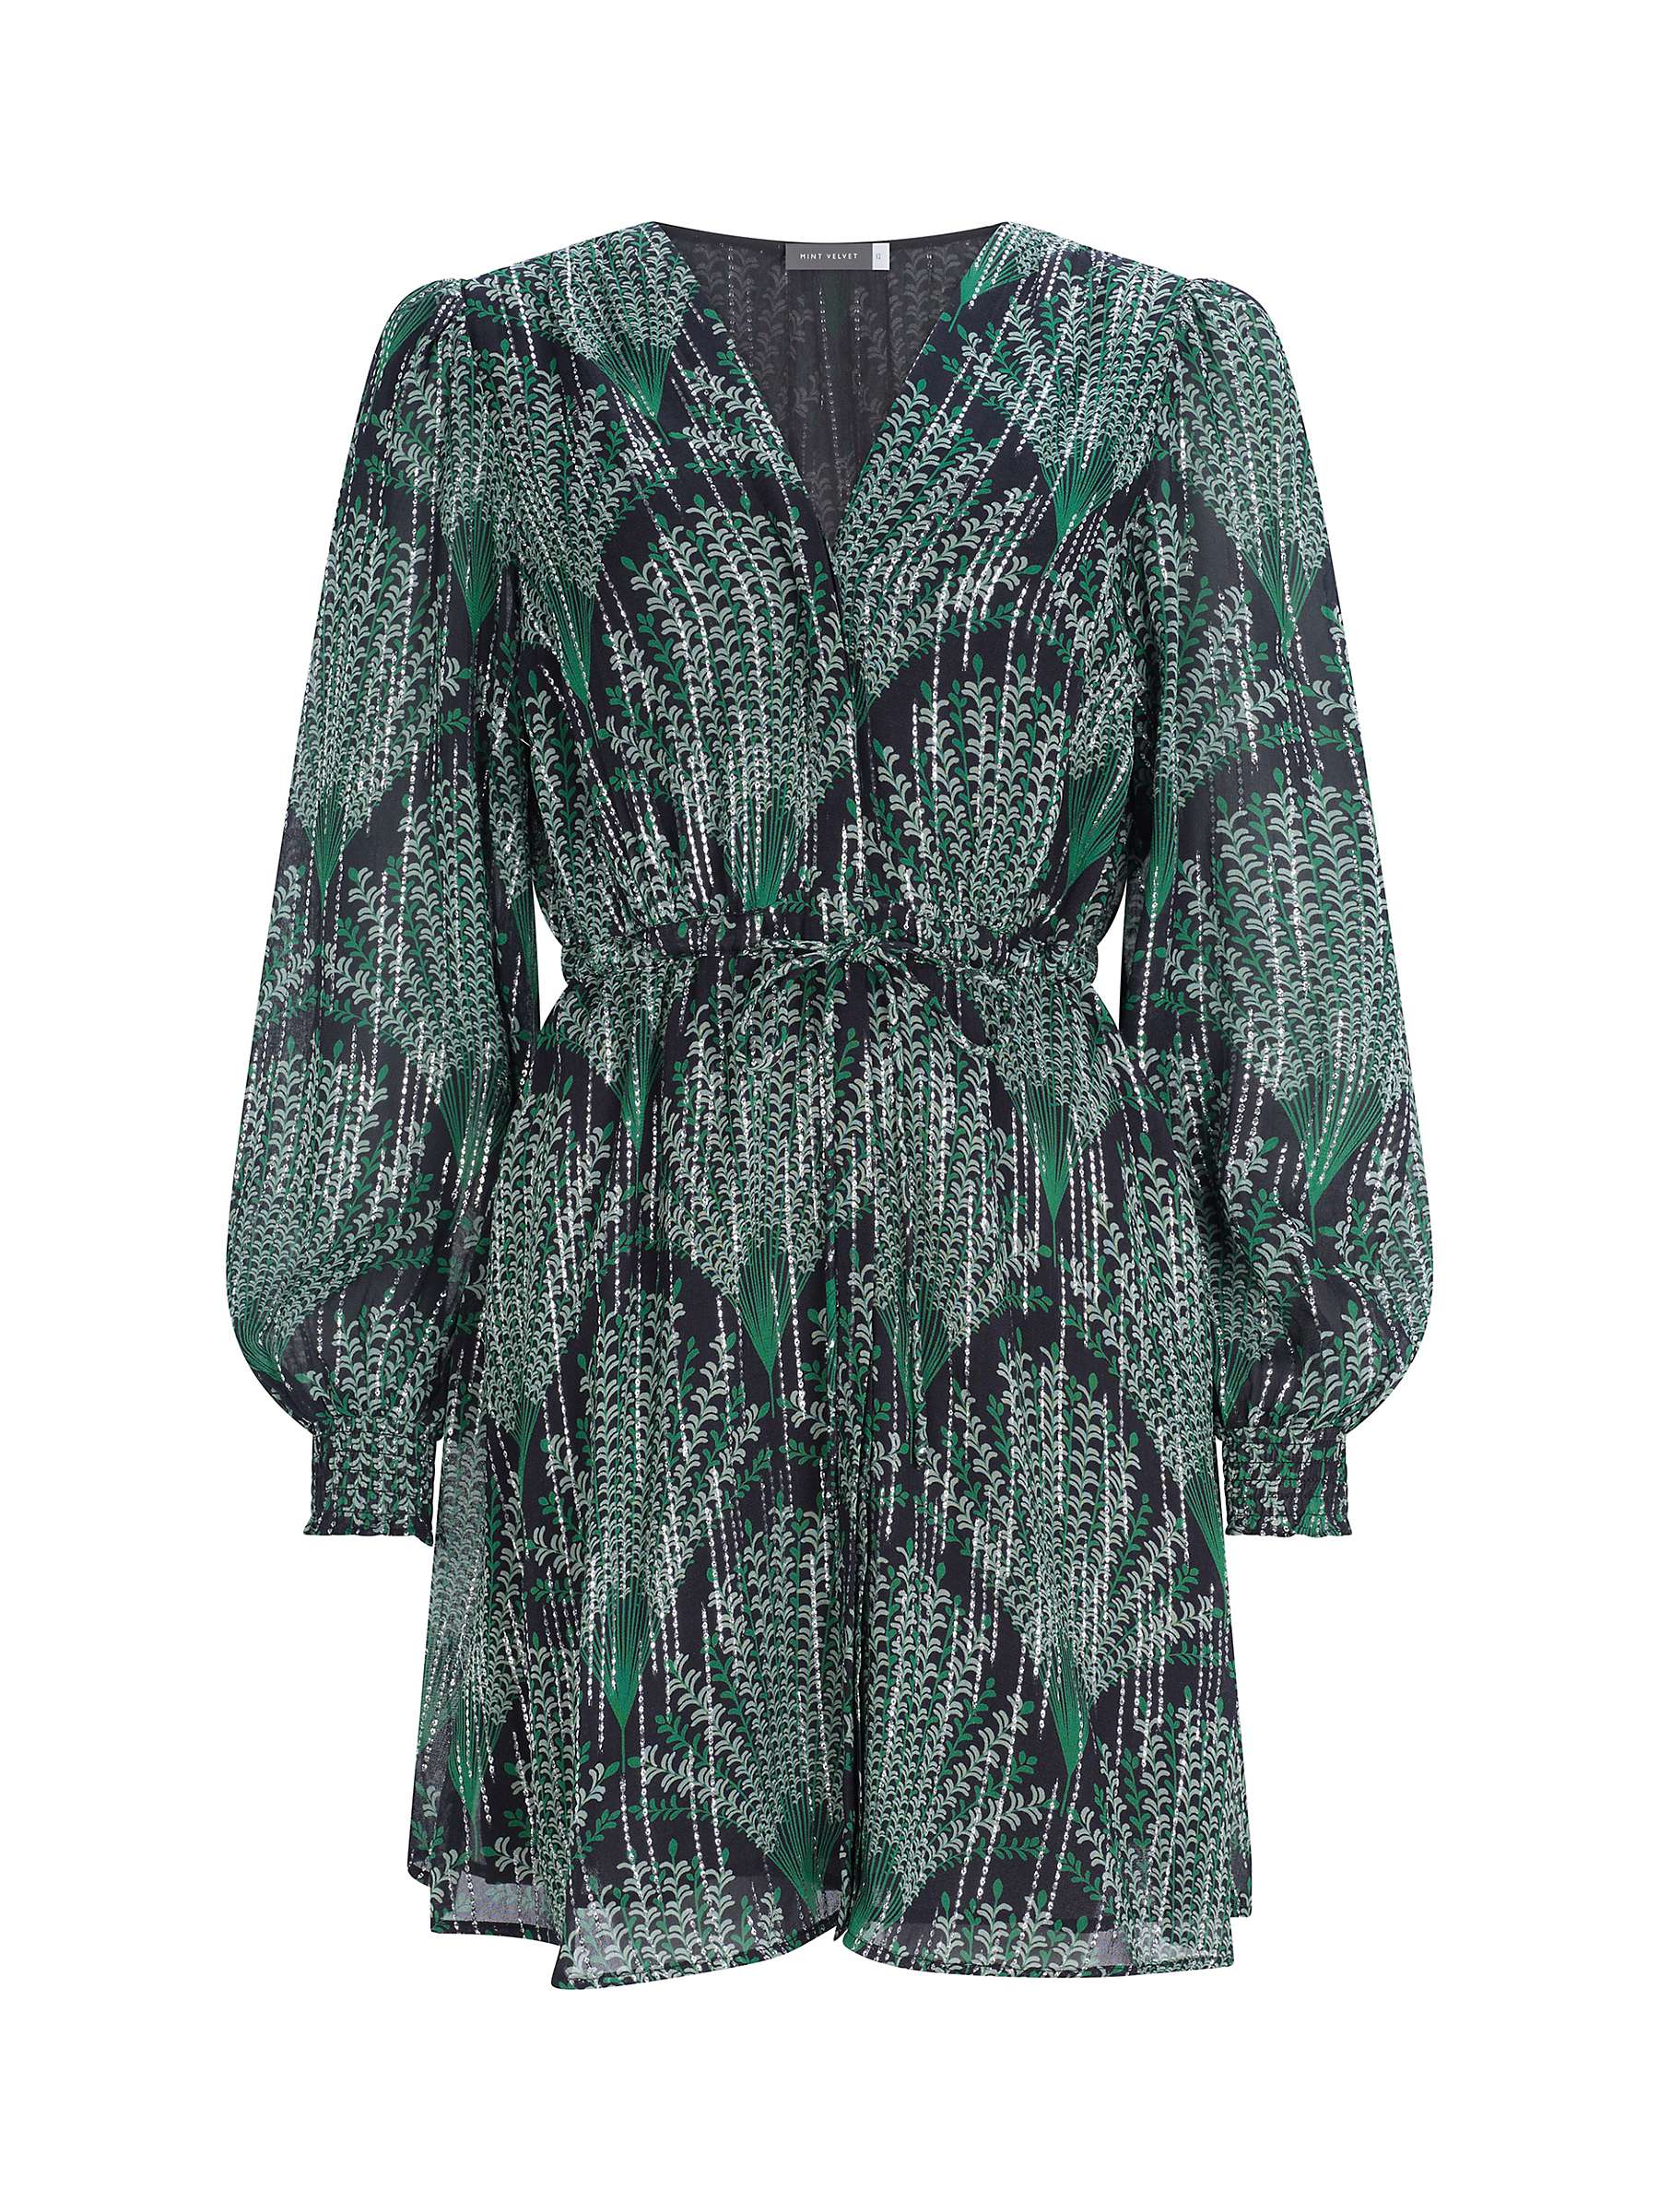 Buy Mint Velvet Jacquard Botanical Print Mini Dress, Dark Green Online at johnlewis.com